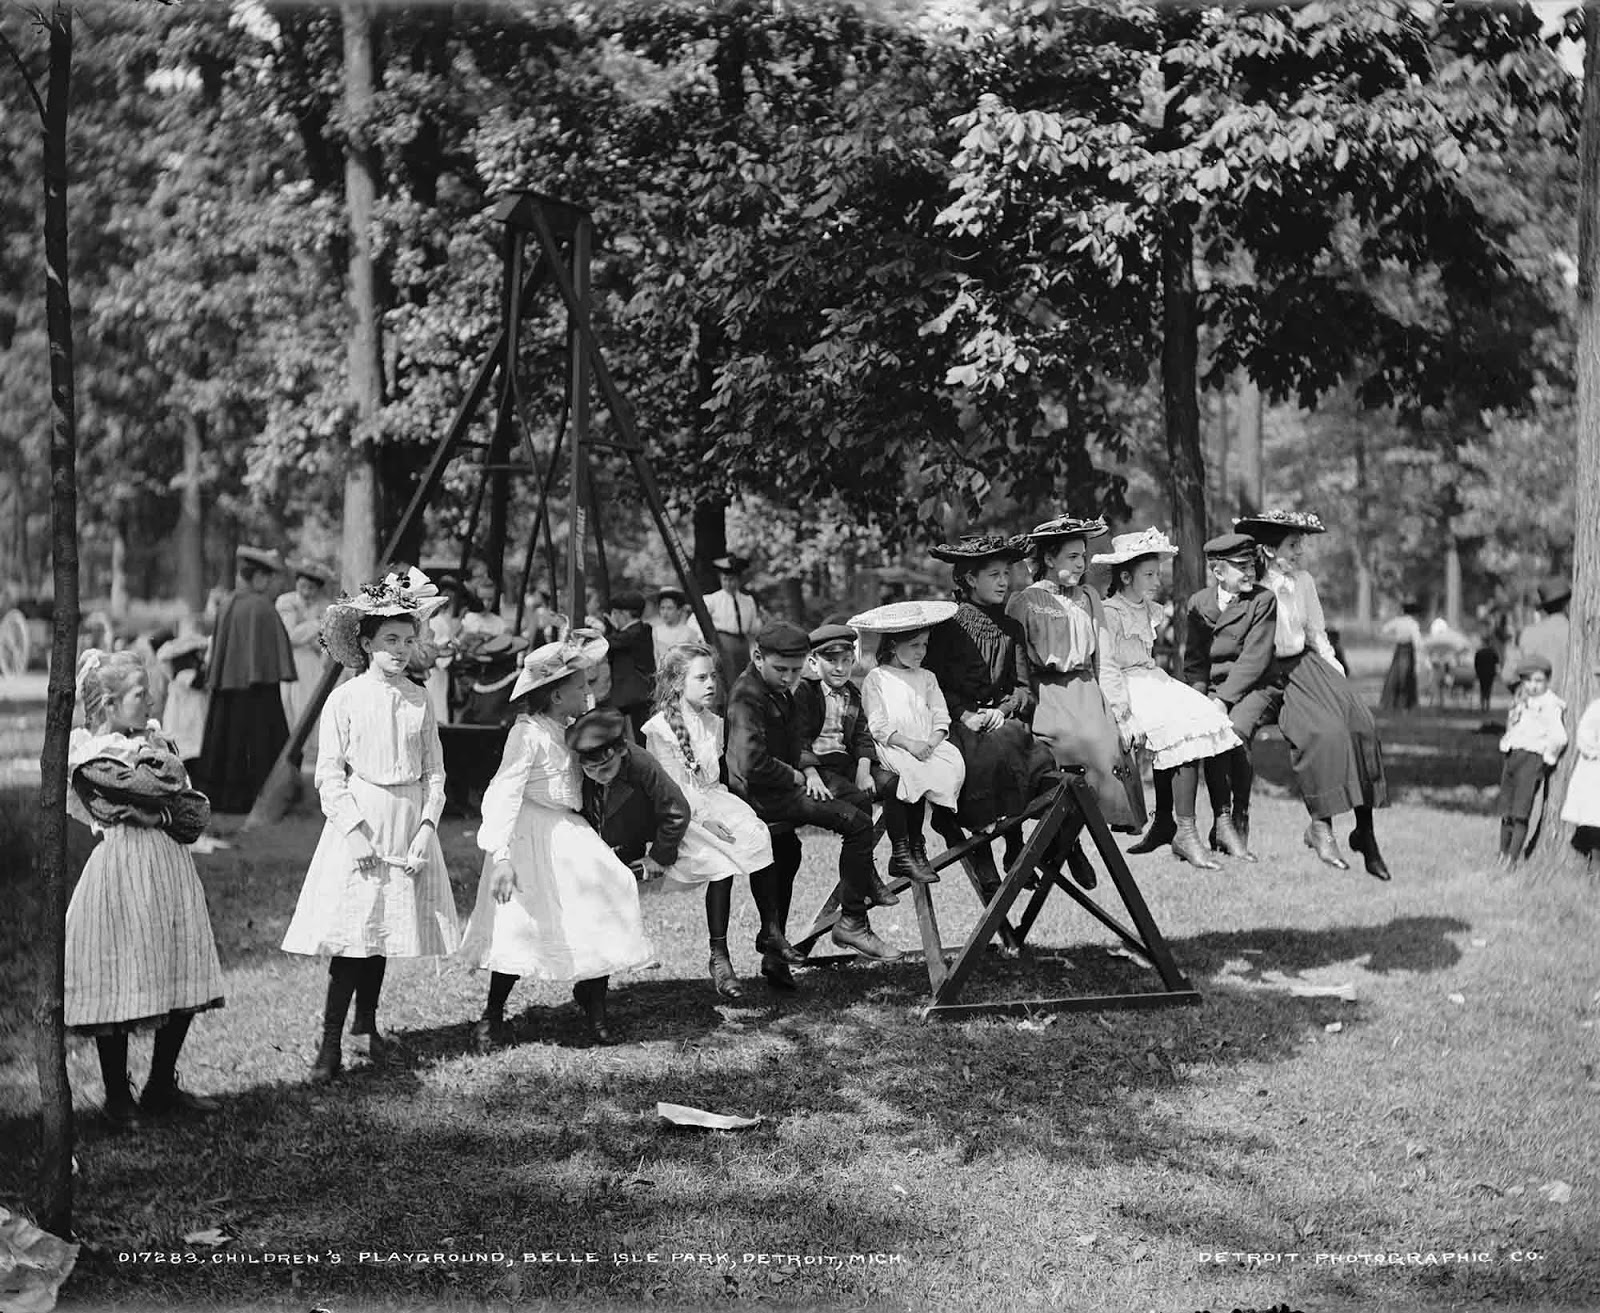 Children's playground, Belle Isle Park, Detroit, Mich. 1900-1905.